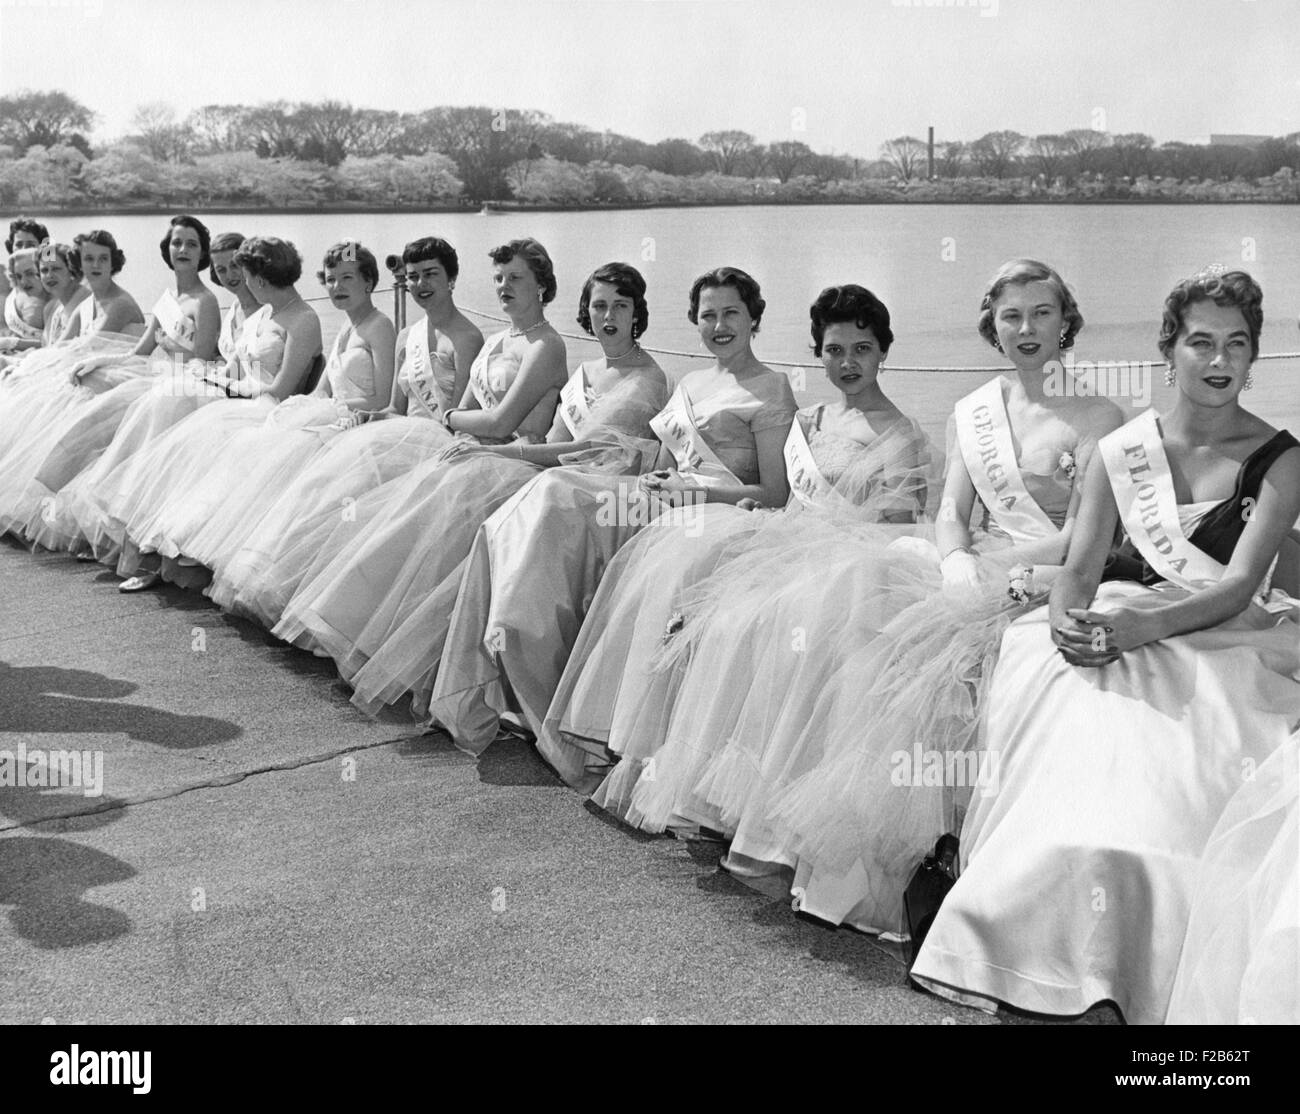 Cherry Blossom Festival Prinzessinnen tragen die Ballkleider und ihren Zustand Schärpen. 2. April 1955. Es sind junge Frauen von 19-24 von Leistungsnachweisen, außergewöhnliche Haltung und Erscheinung, hervorragende Kommunikationsfähigkeiten, Führung, Interesse, bürgerlichen und internationalen Angelegenheiten. -(BSLOC 2014 16 158) Stockfoto